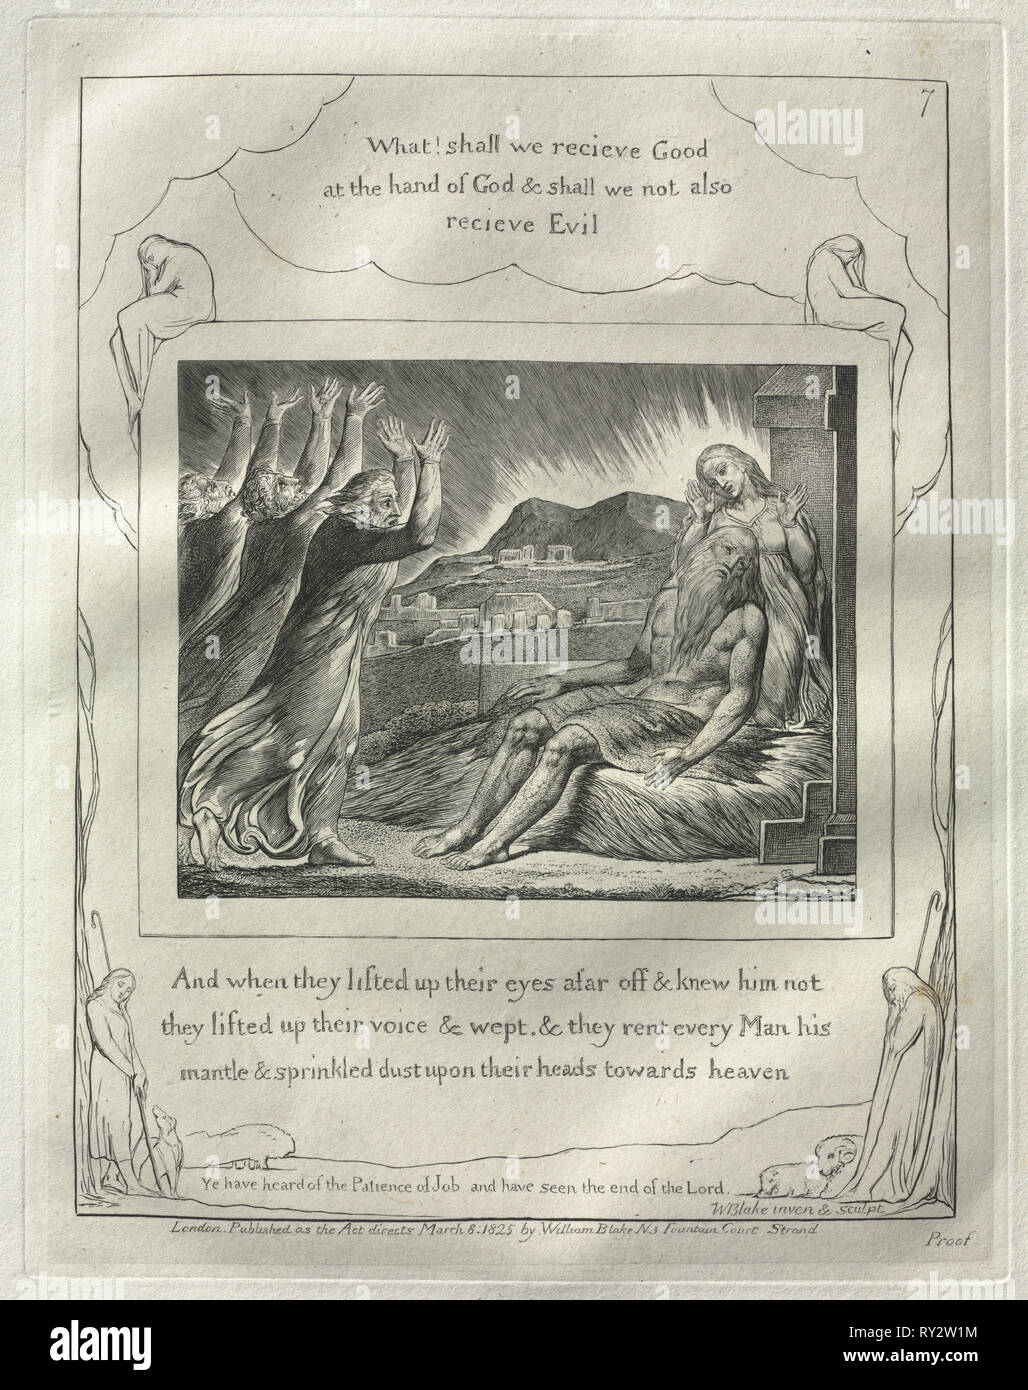 El libro de Job: nº 7, y cuando se había alzando los ojos desde lejos y no le conocieron, alzaron su voz y lloraron, 1825. William Blake (británico, 1757-1827). Grabado Foto de stock